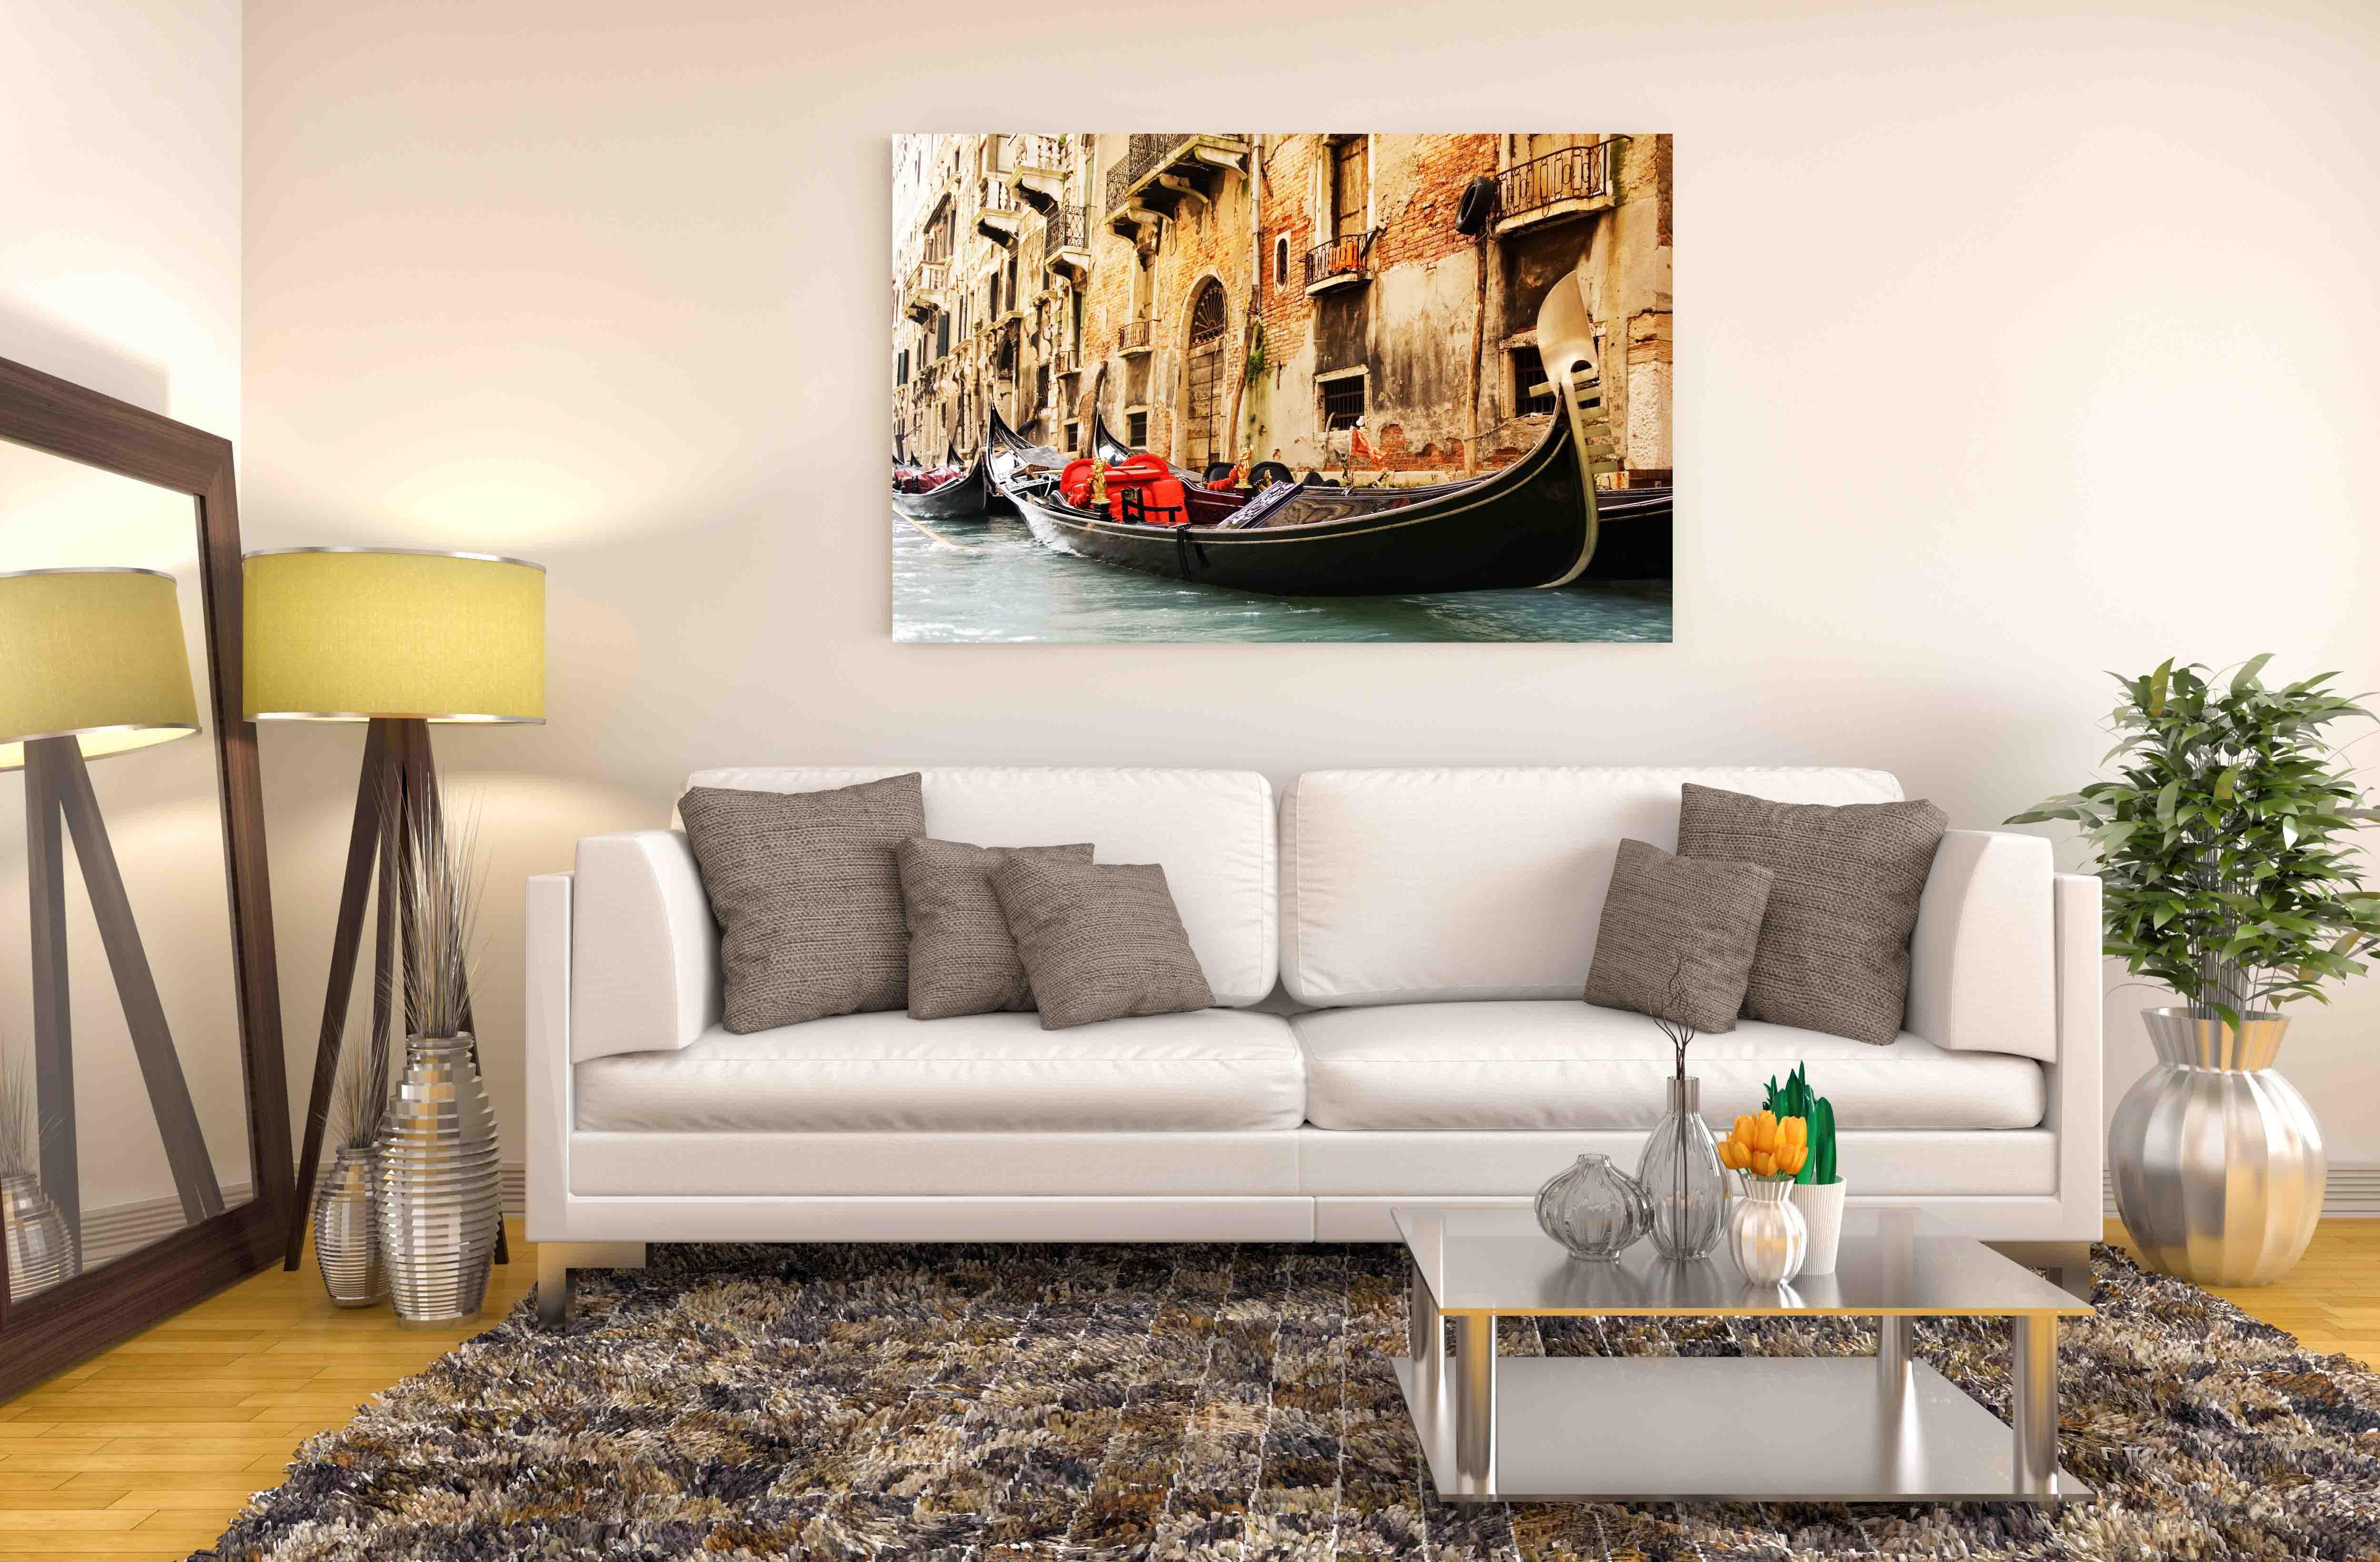 Zdjęcie - łódź w Wenecji